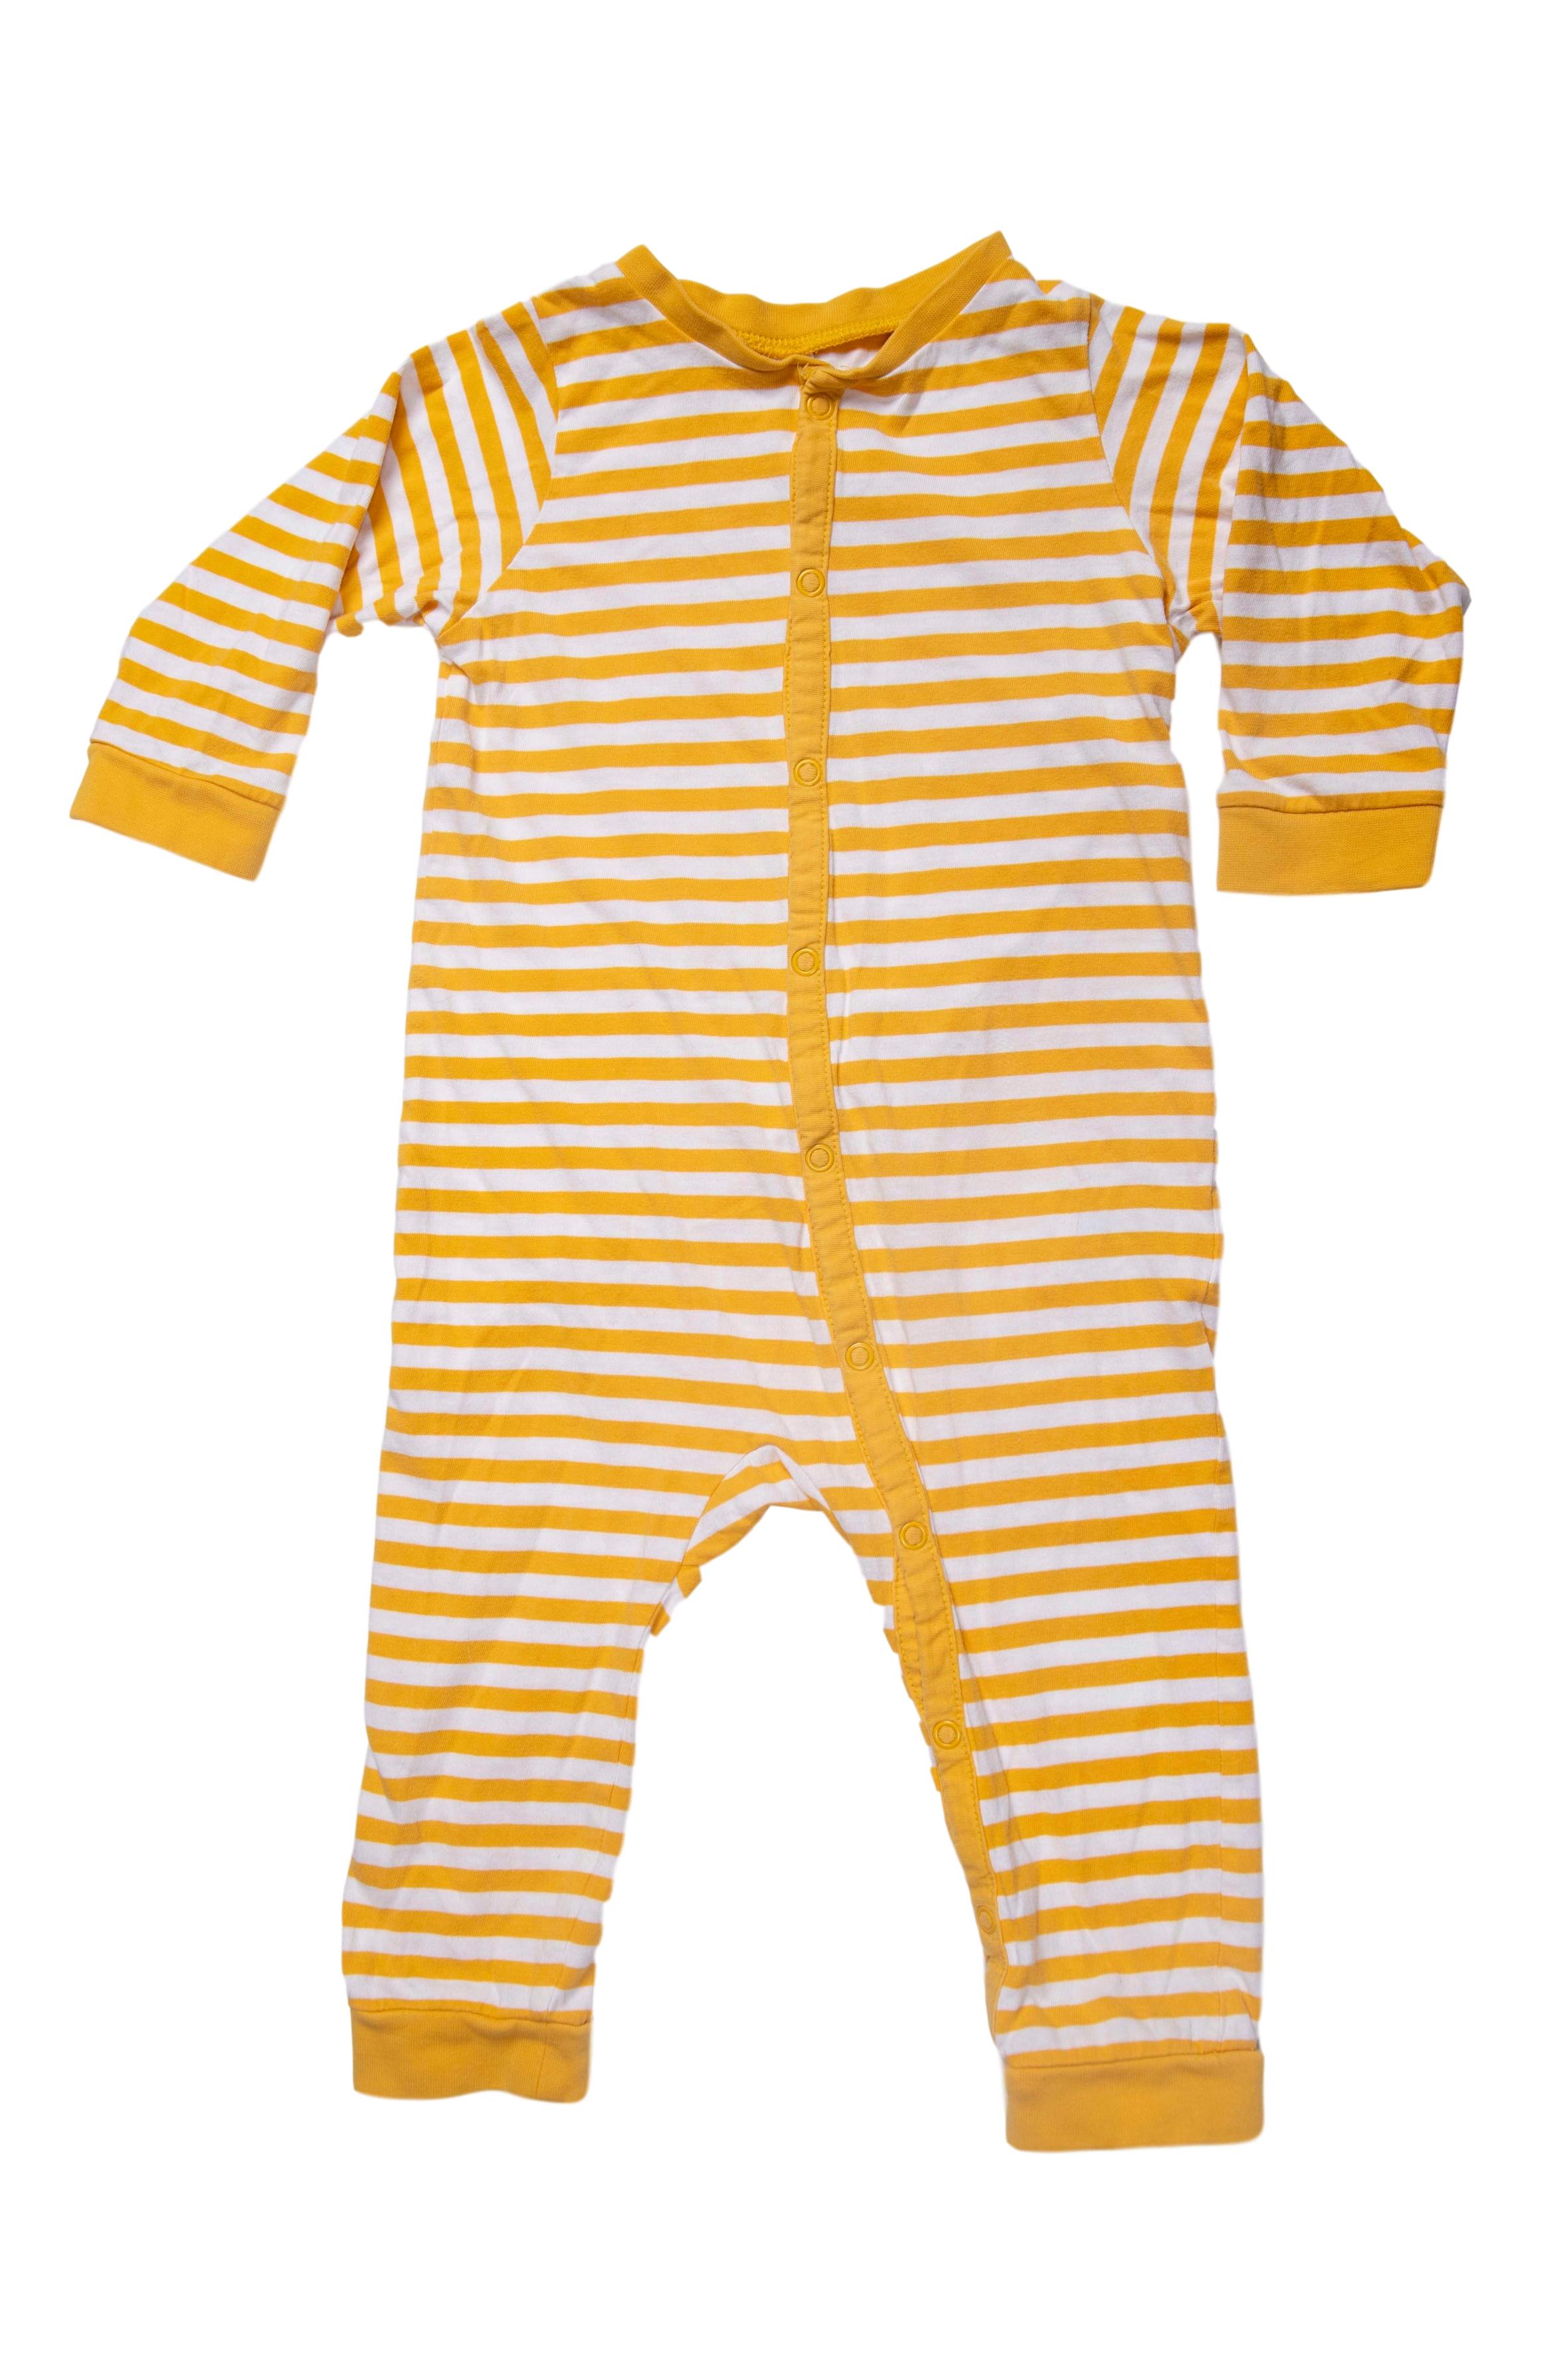 pijama manga larga, algodón, rayado amarillo y blanco - H & M